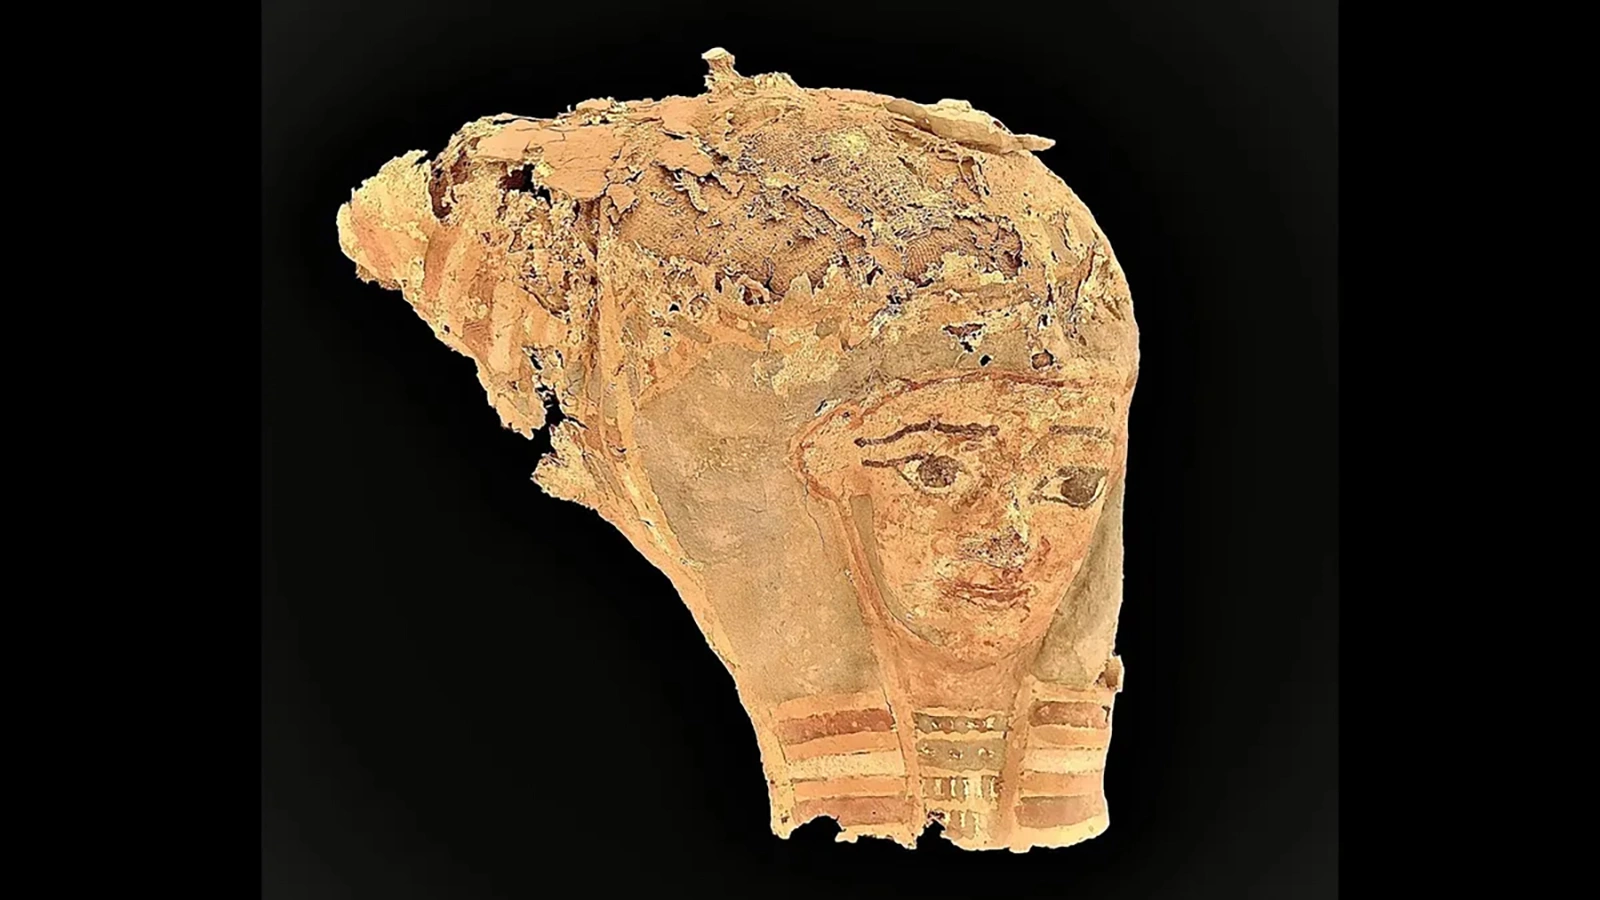 <p>Артефакт, найденный при раскопках в древнем городе Асуан. Возле мавзолея Ага-хана III (бывший Председатель Ассамблеи Лиги Наций умер в 1957 году) раскопали&nbsp;террасы древнеегипетских гробниц</p>